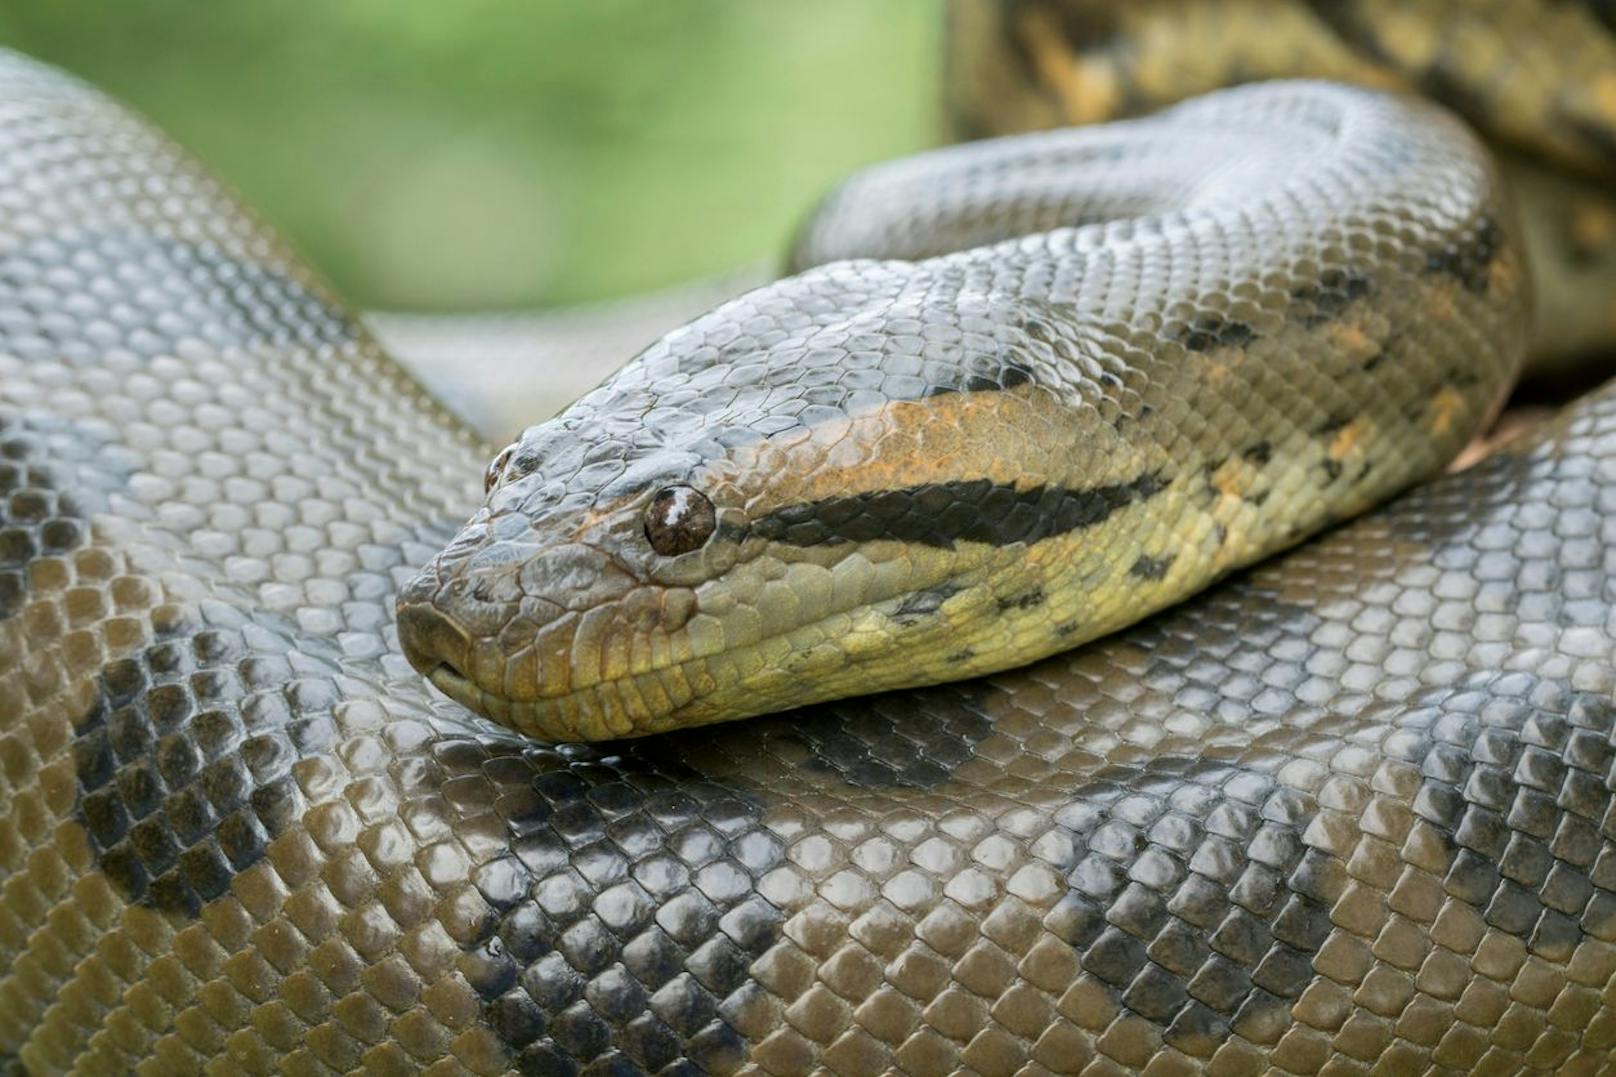 Anakondas zählen zur Familie der Boas und gehören zu den größten Schlangen der Welt.&nbsp;